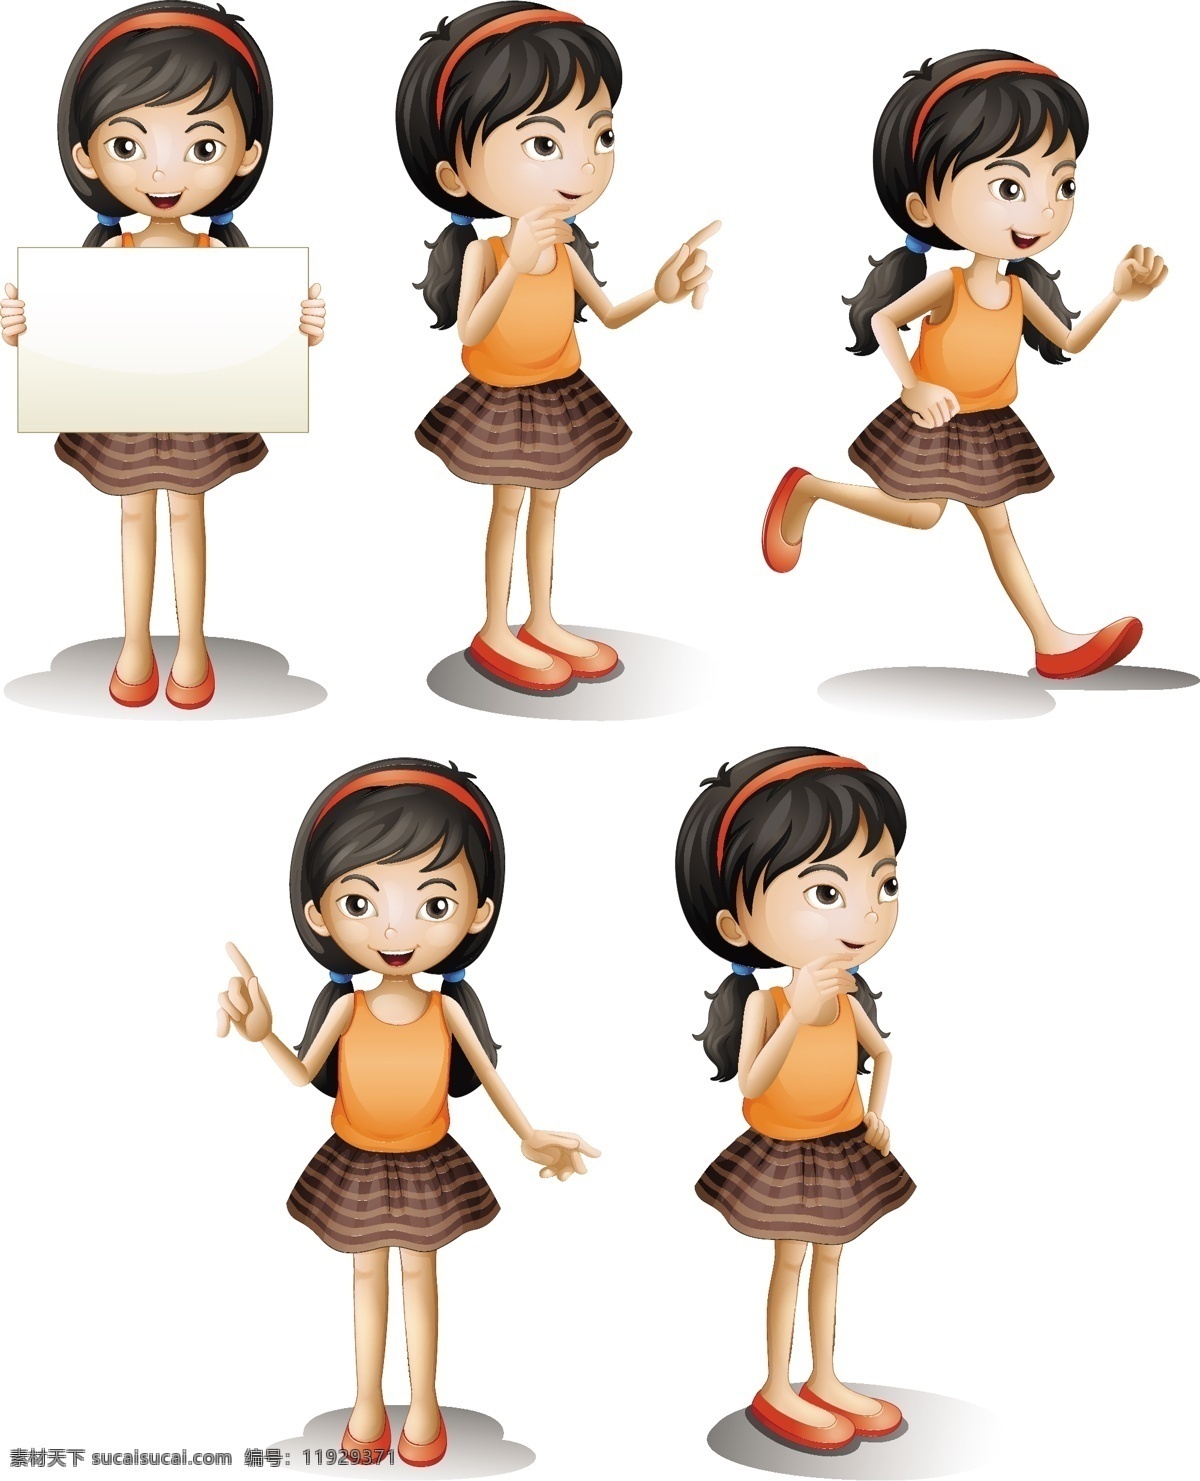 五 不同 位置 女孩 背景 菜单 模板 纸张 人物 卡通 中国 可爱 空间 3d 白色背景 图形 儿童 人 符号 跑步 日语 绘画